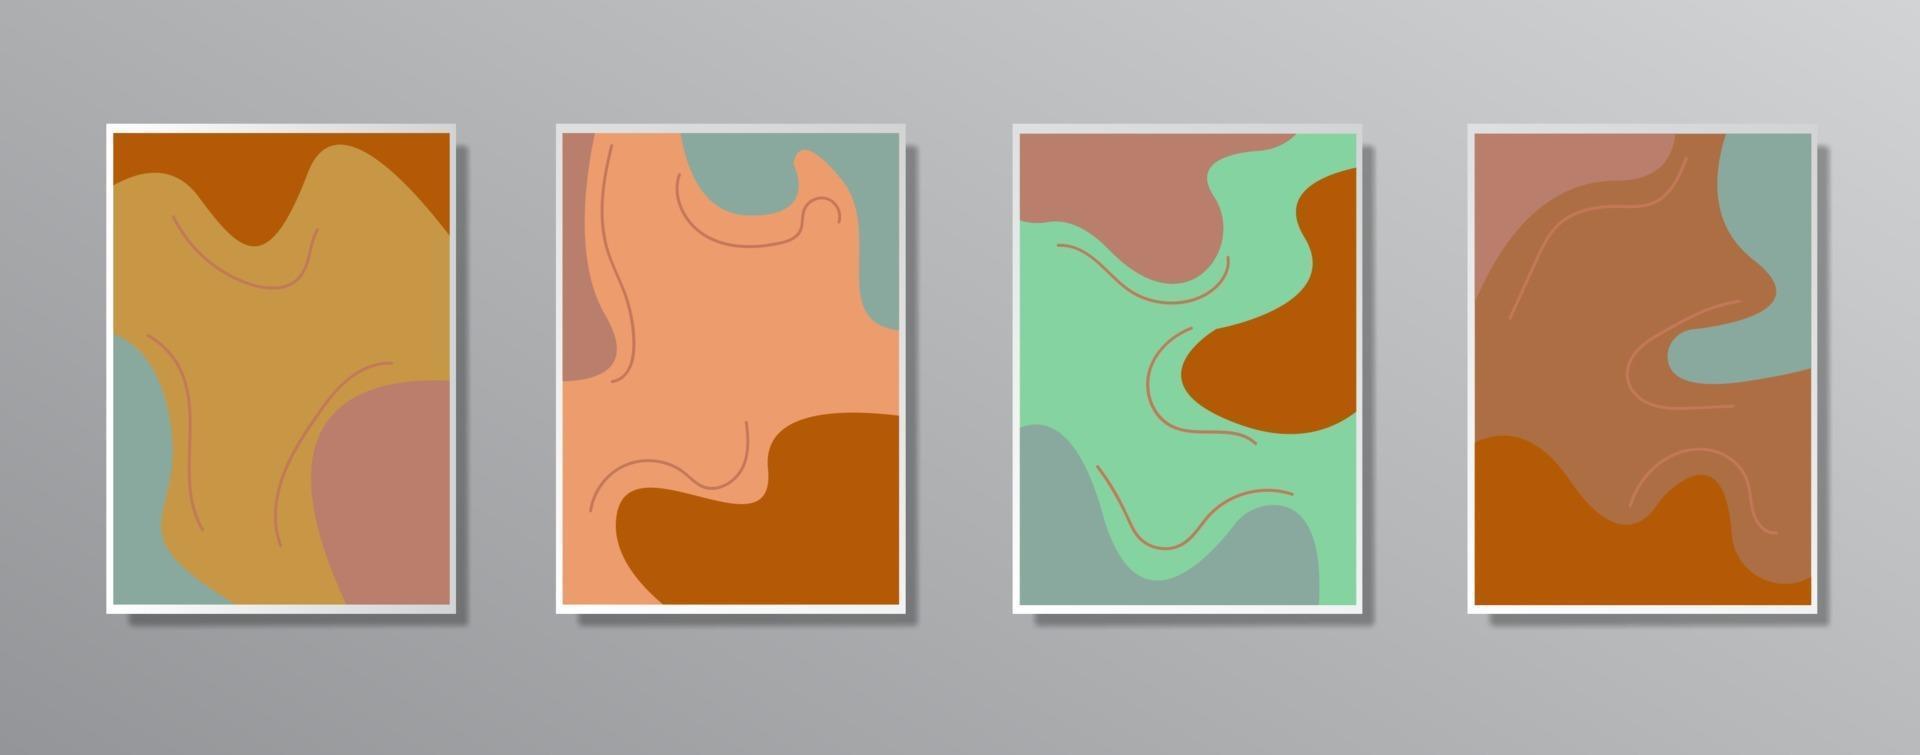 set van creatieve minimalistische hand getrokken vintage neutrale kleurenillustraties vector